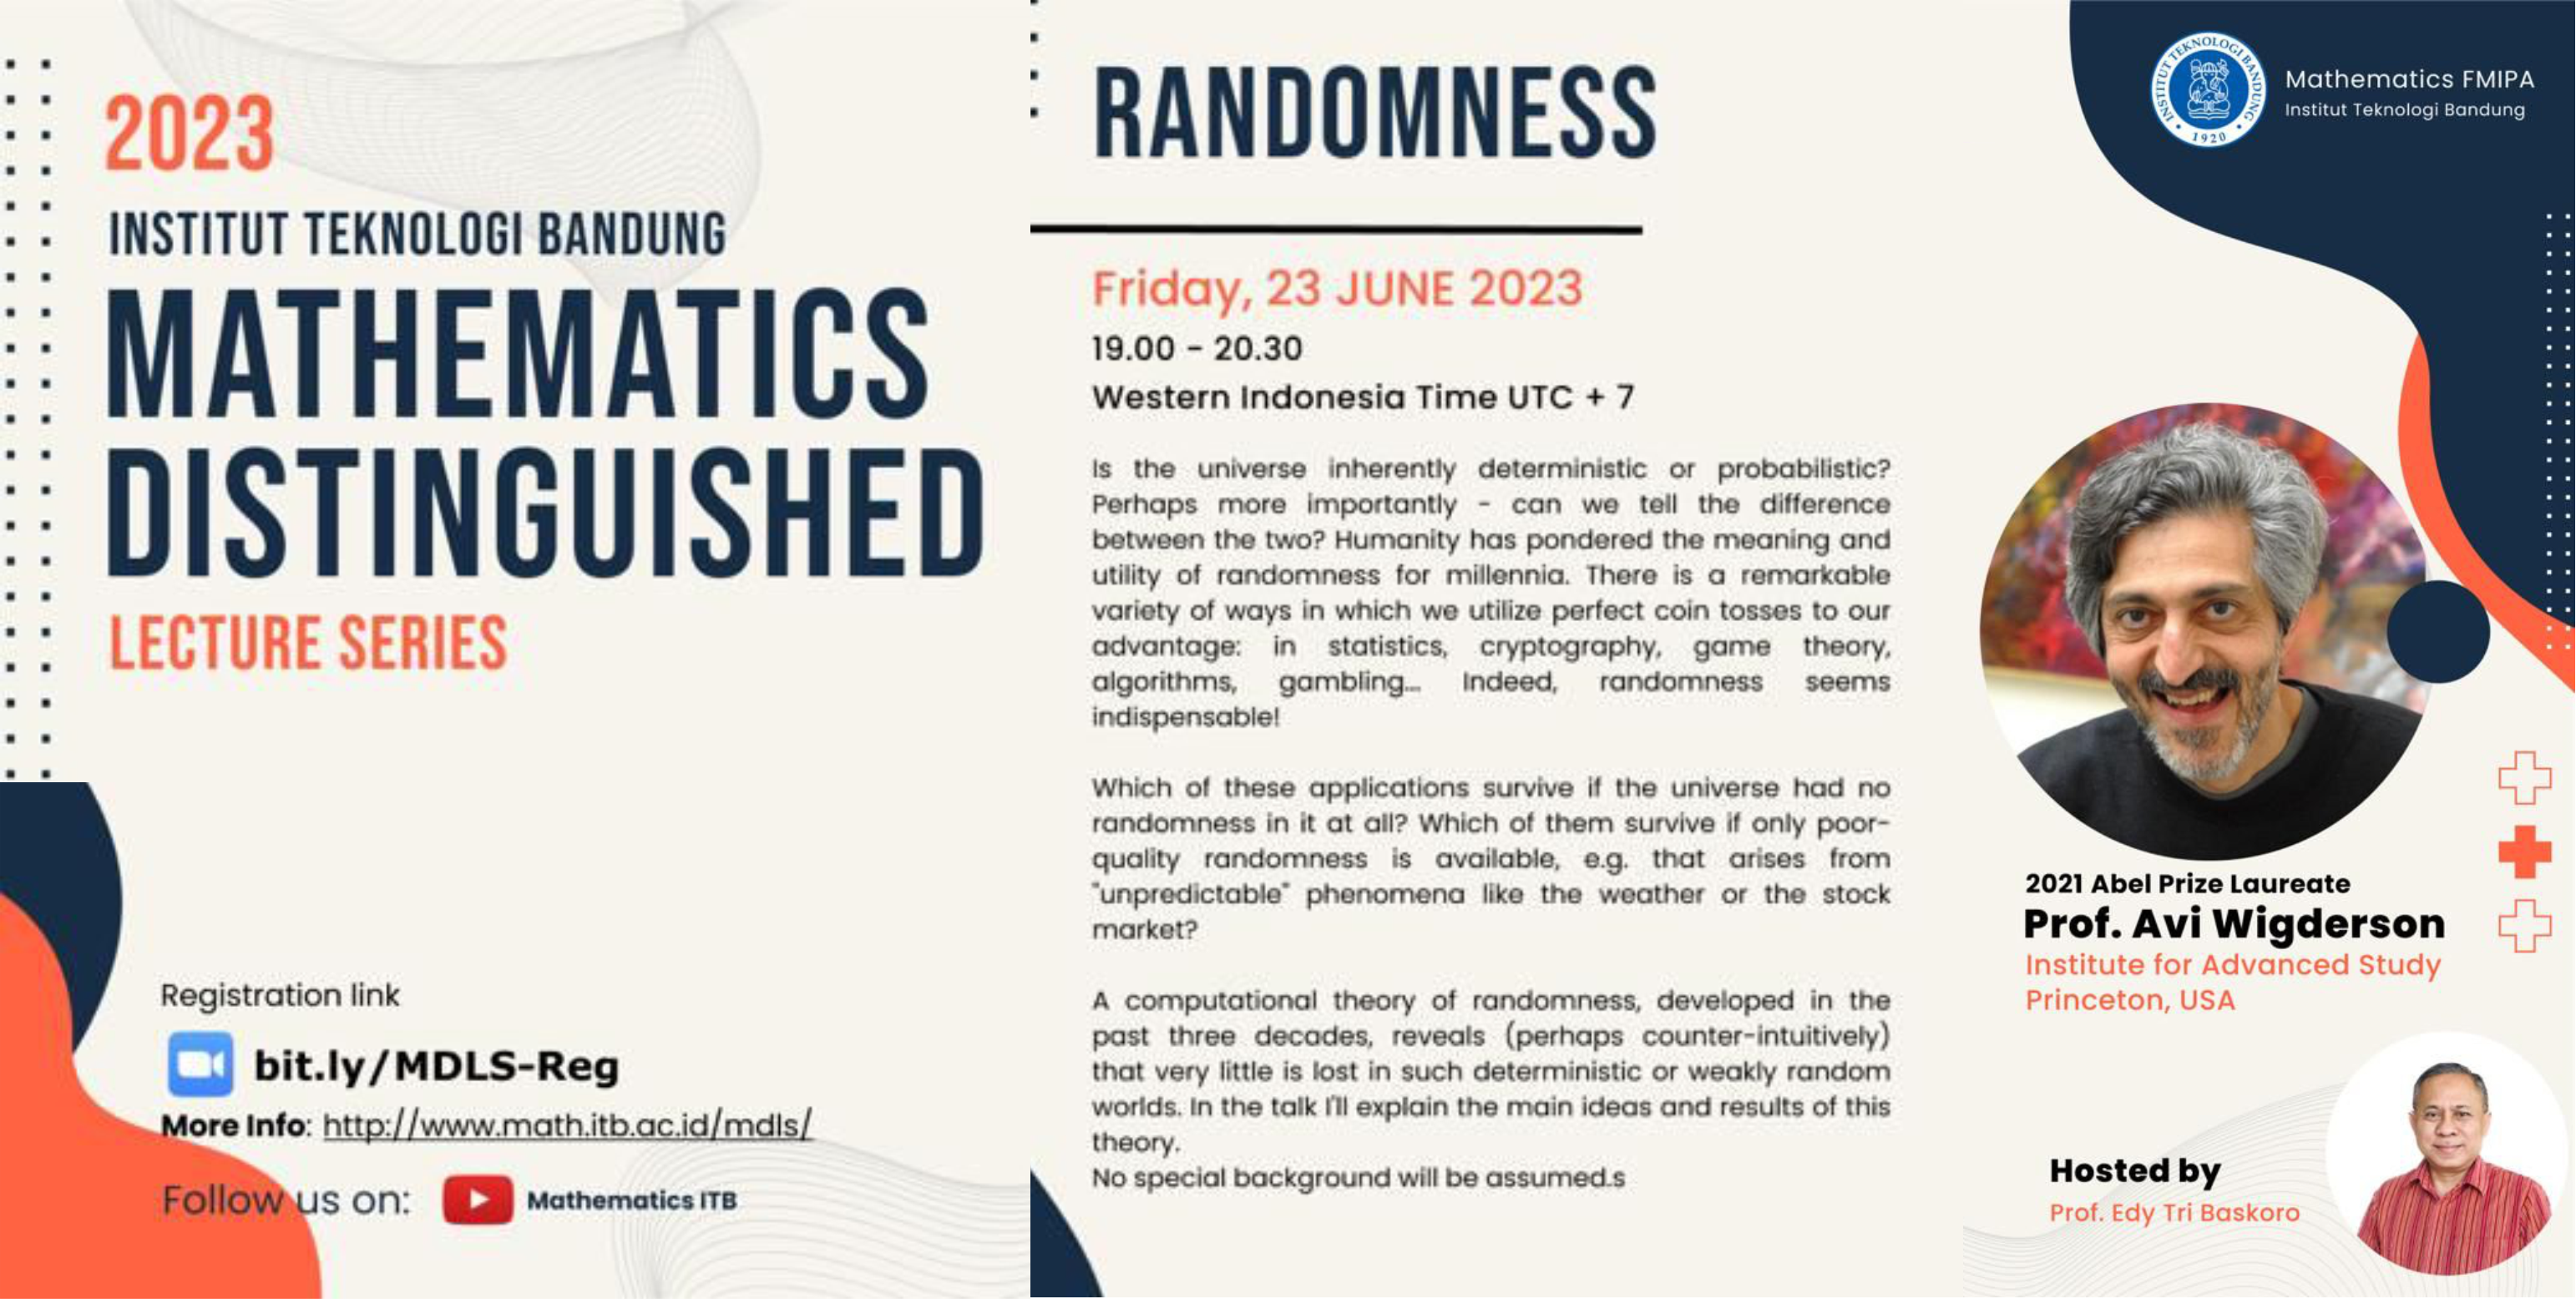 Pemenang Abel Prize 2021 Prof. Avi Wigderson bicara tentang Randomness di FMIPA ITB